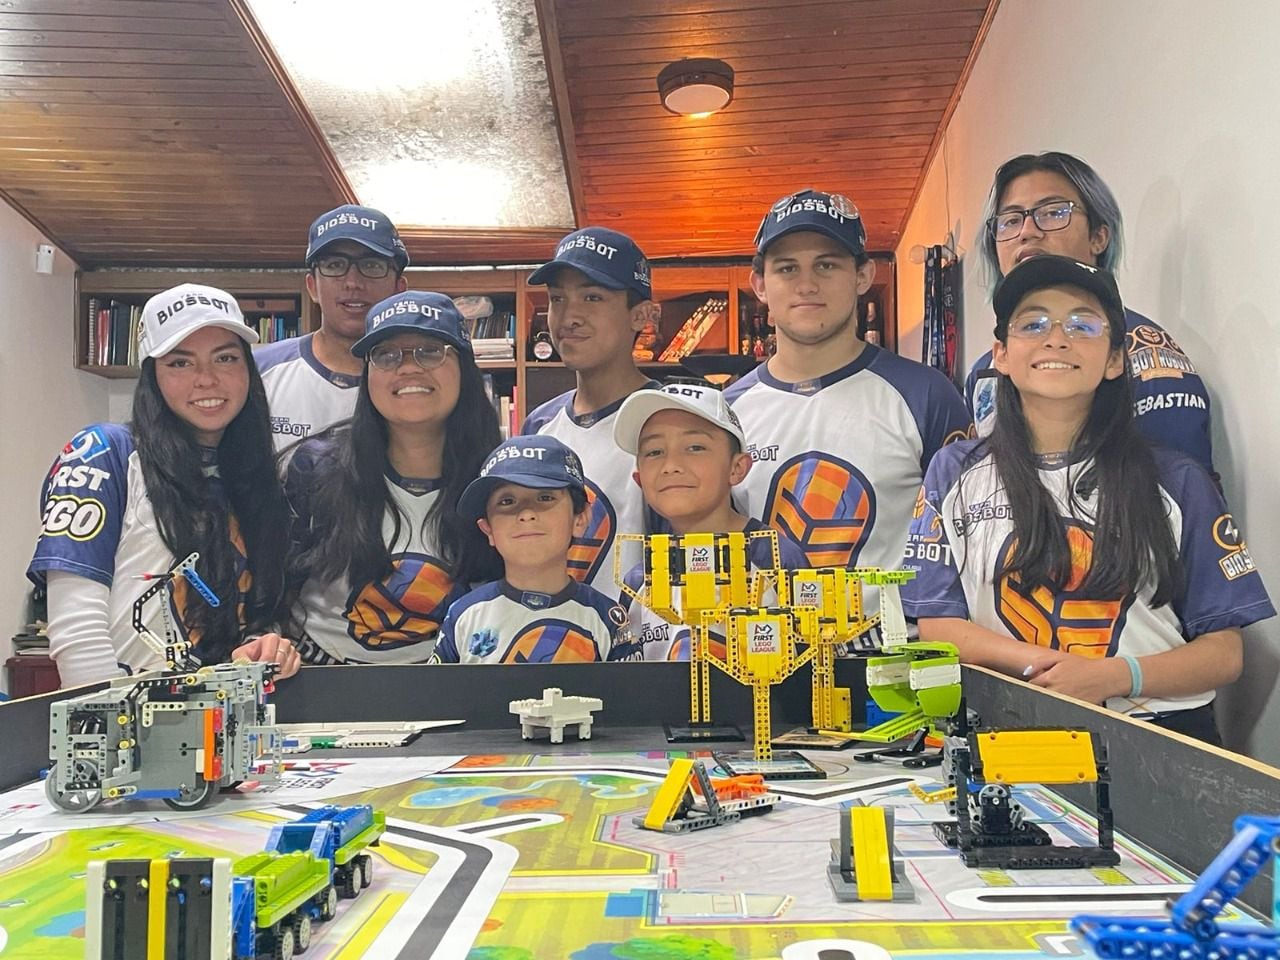 TEAM BIOSBOT, un
club de Robótica con
perspectiva de oportunidad
e inclusión para niños y
n i ñ a s d e d i f e r e n t e s
localidades de Bogotá.